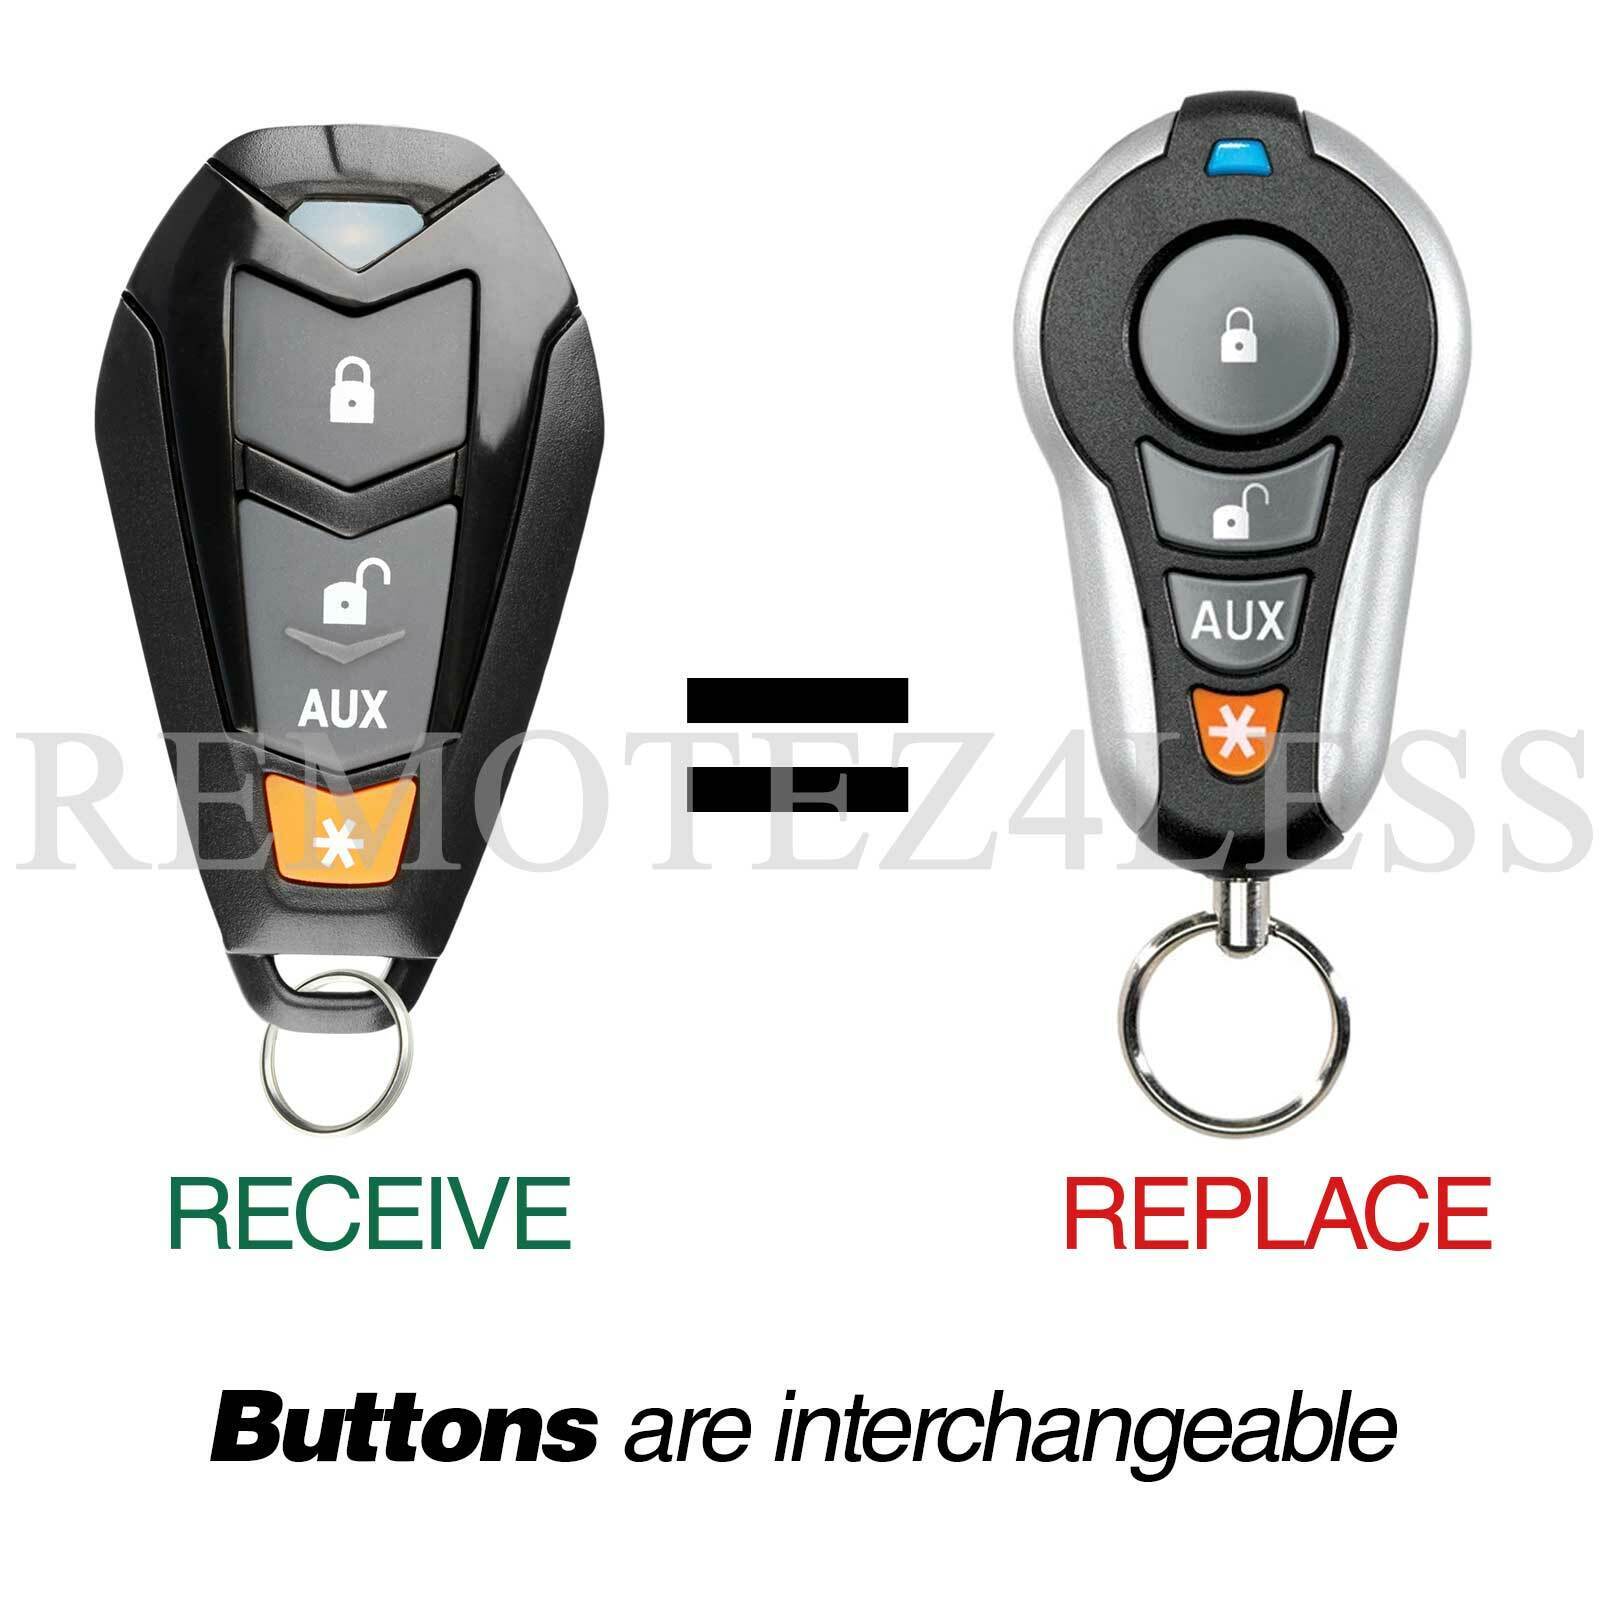 New Replacement Dei Viper 4 Button Keyless Remote Key Fob Control For EZSDEI7141